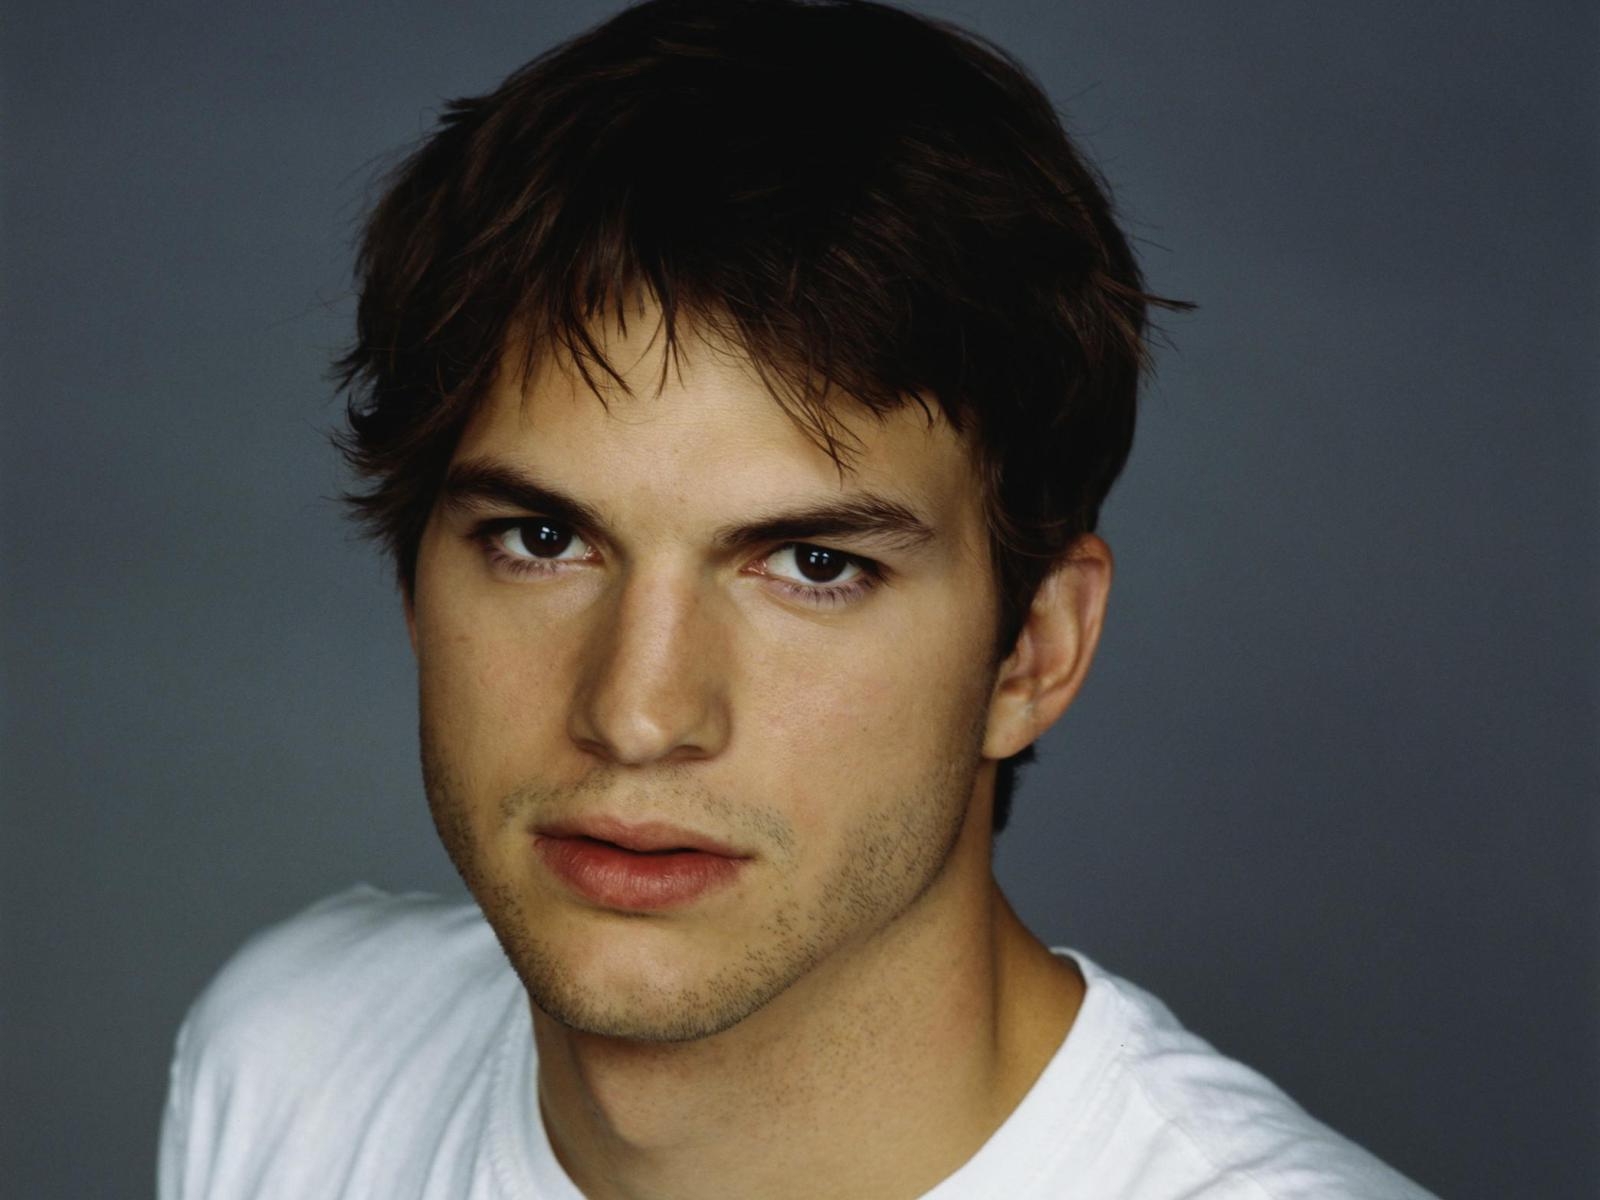 Ashton Kutcher Backgrounds, Compatible - PC, Mobile, Gadgets| 1600x1200 px